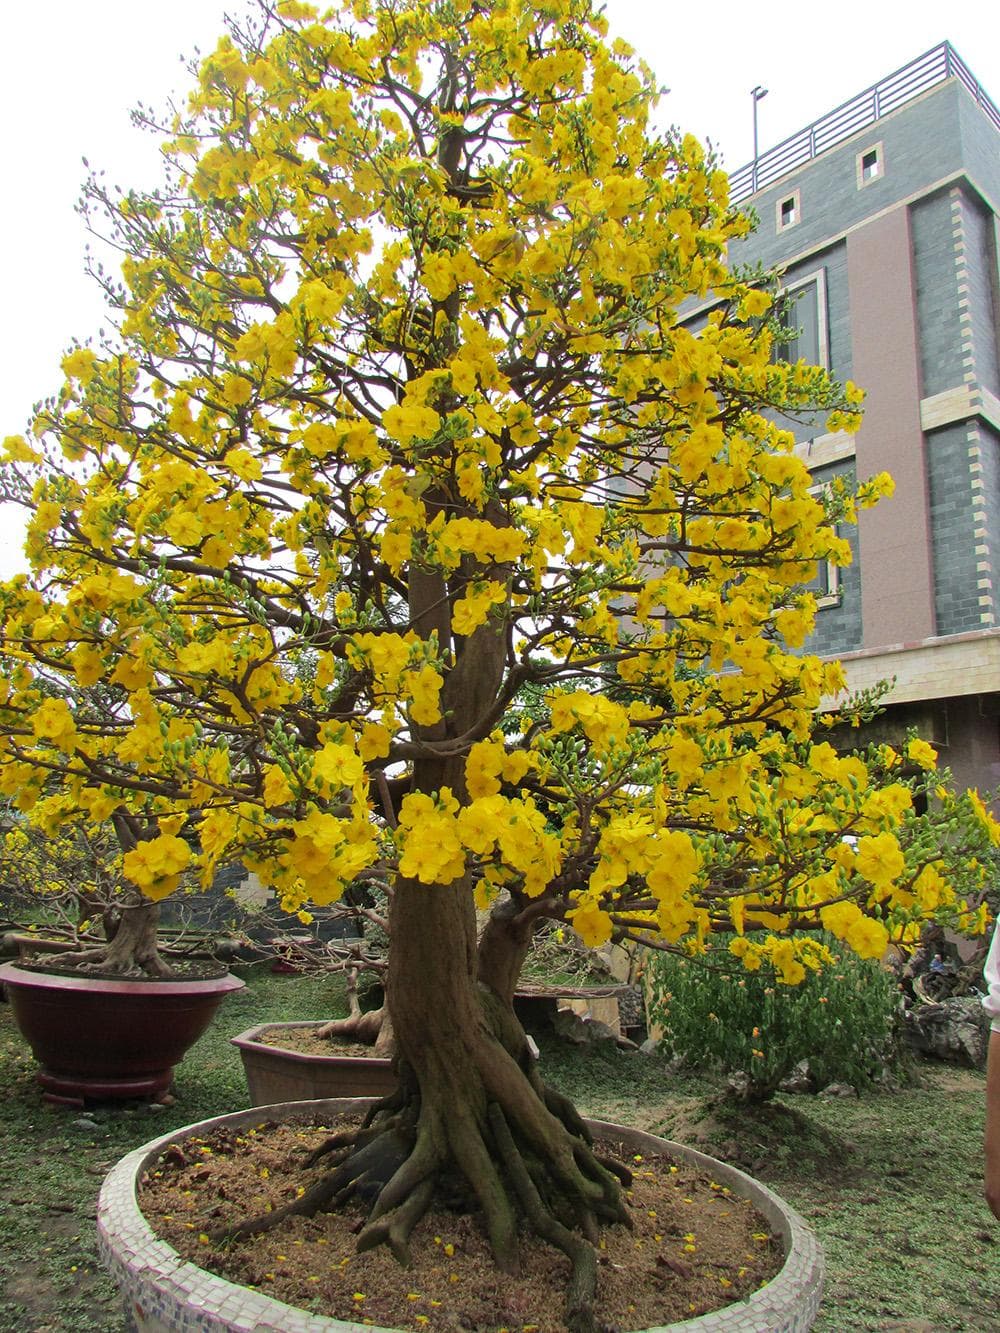 Mua bán sỉ lẻ cây mai vàng con giống miền tây chưng tết bonsai giá rẻ